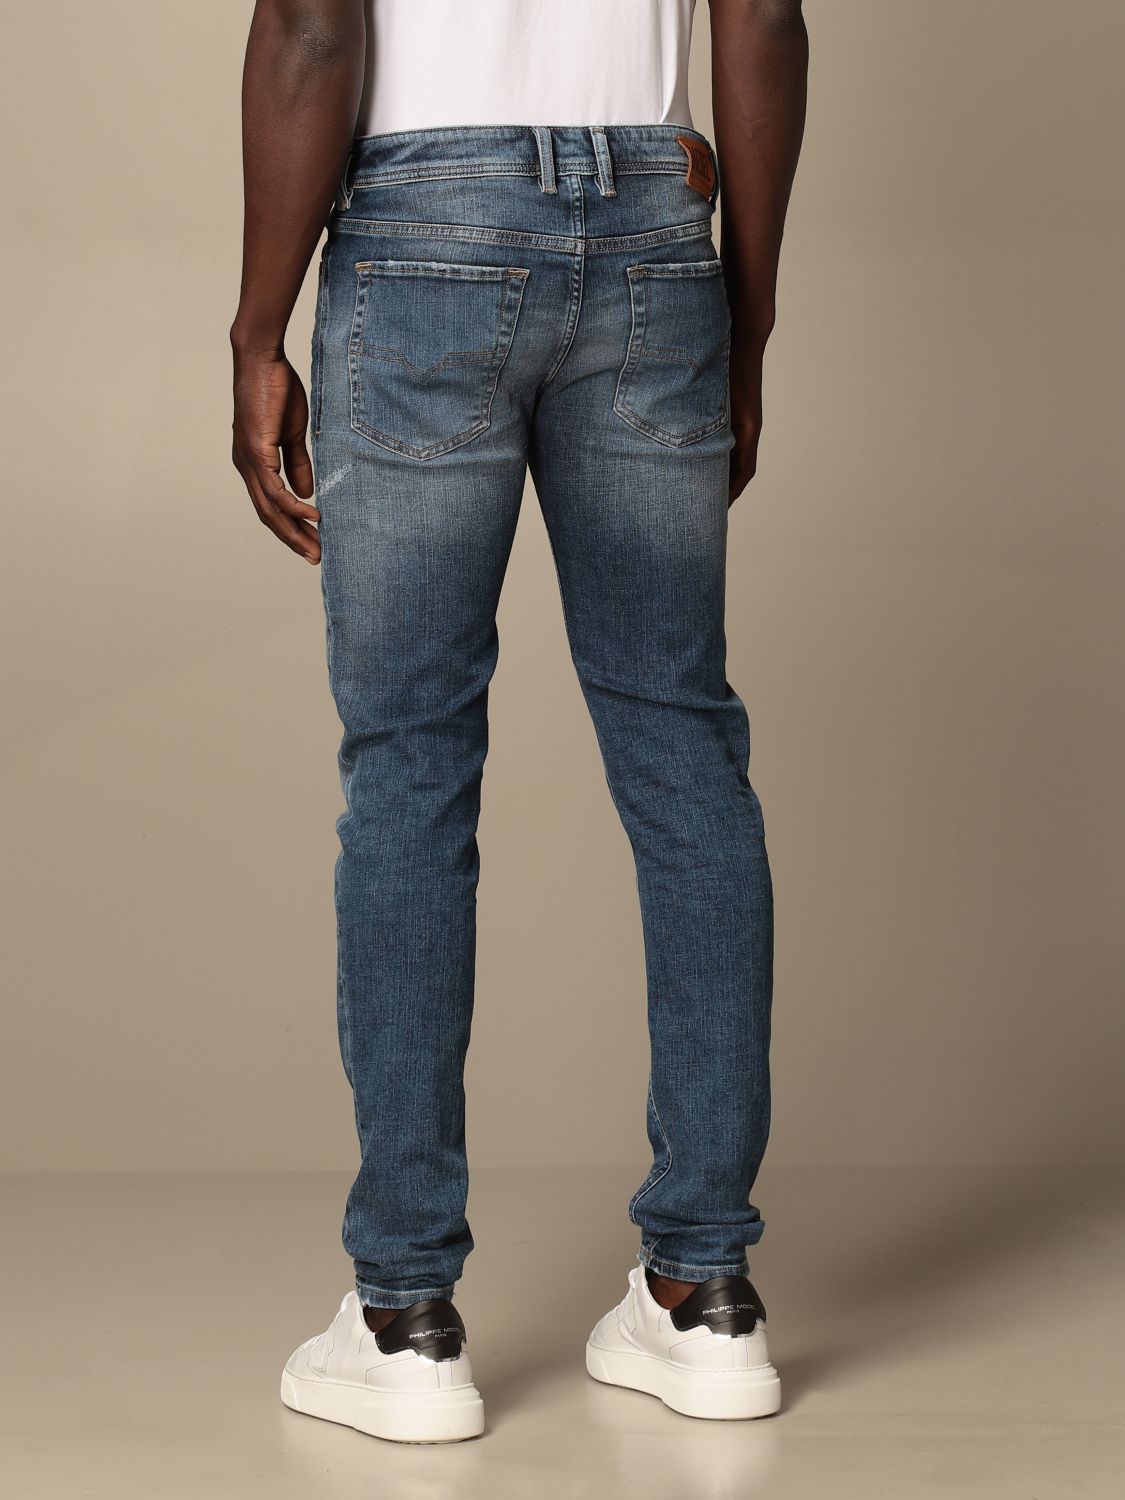 DIESEL: Sleenker-x 5-pocket skinny stretch jeans - Denim | Diesel jeans ...